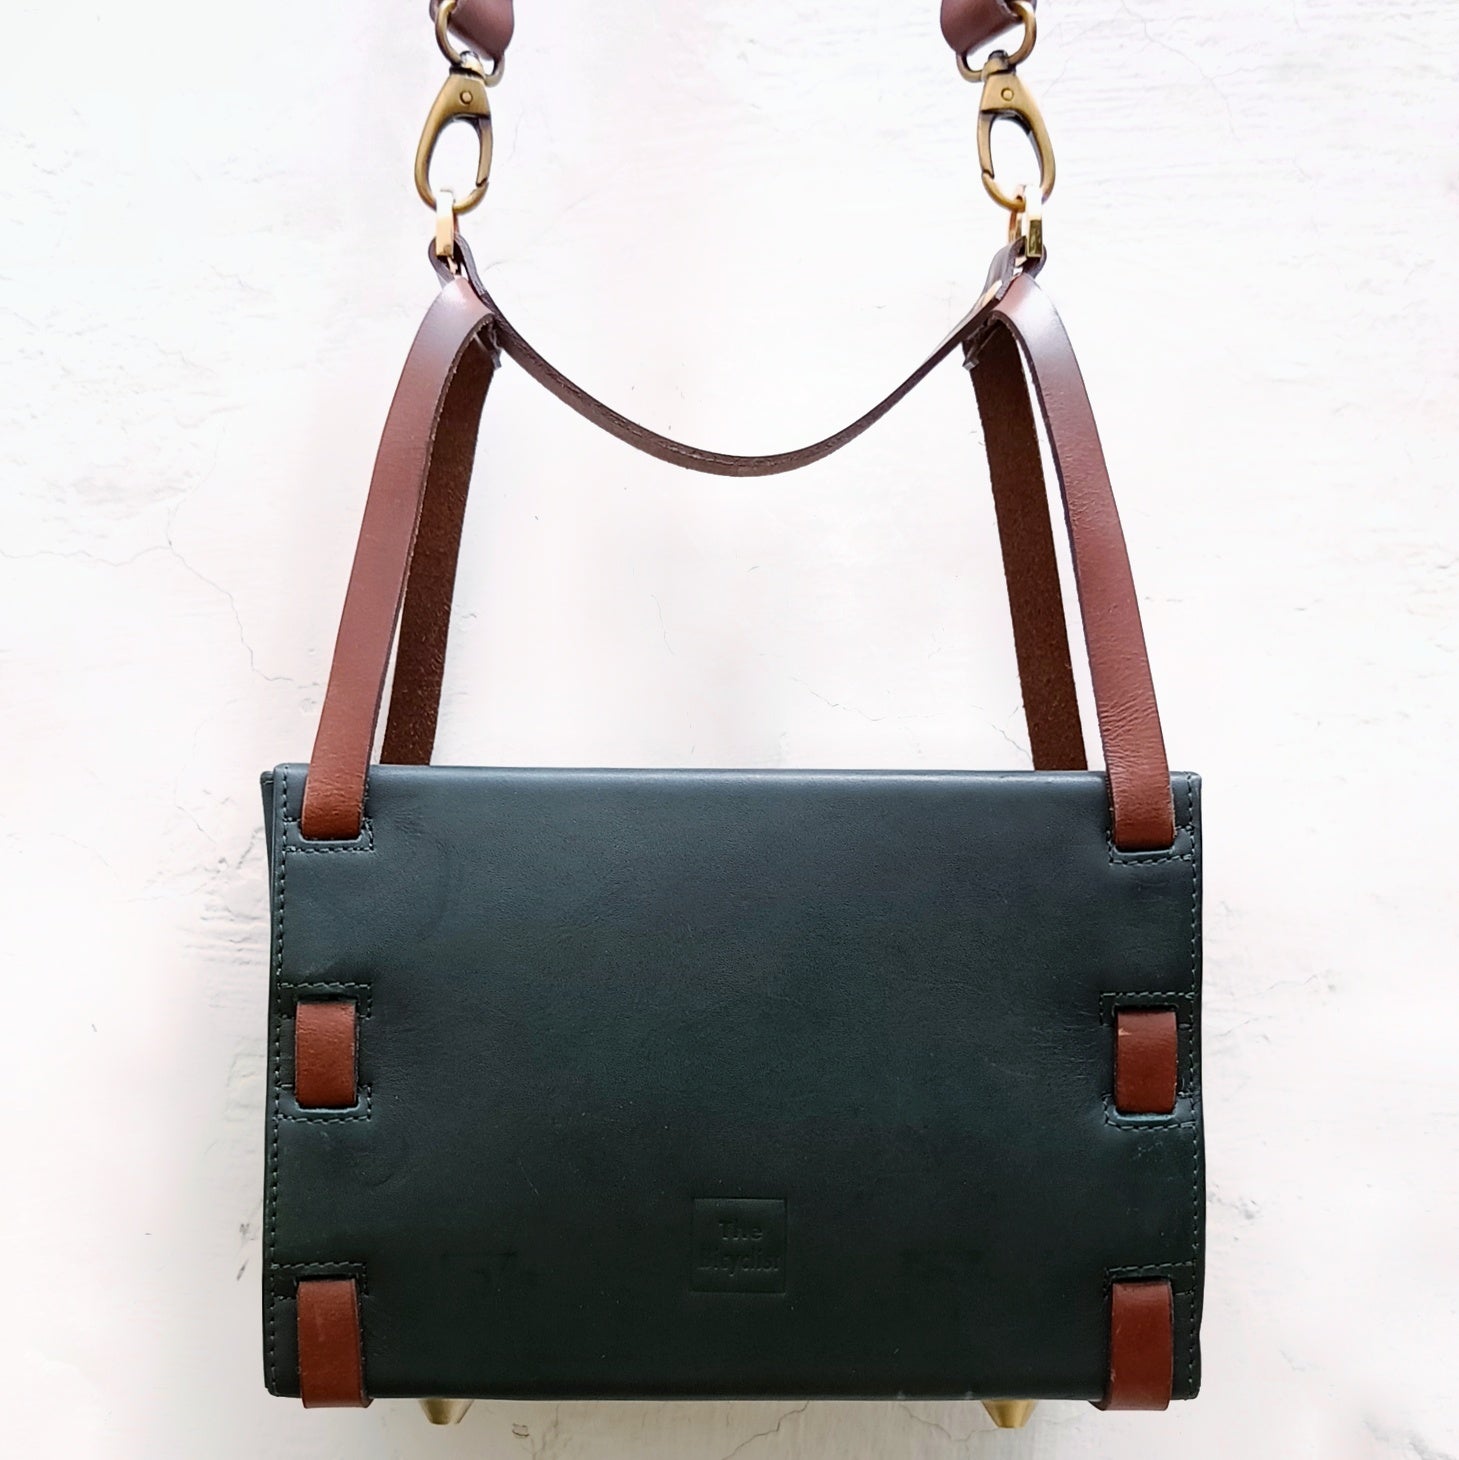 Handmade Leather Duffel Bags | Handmade Leather Weekender Bags